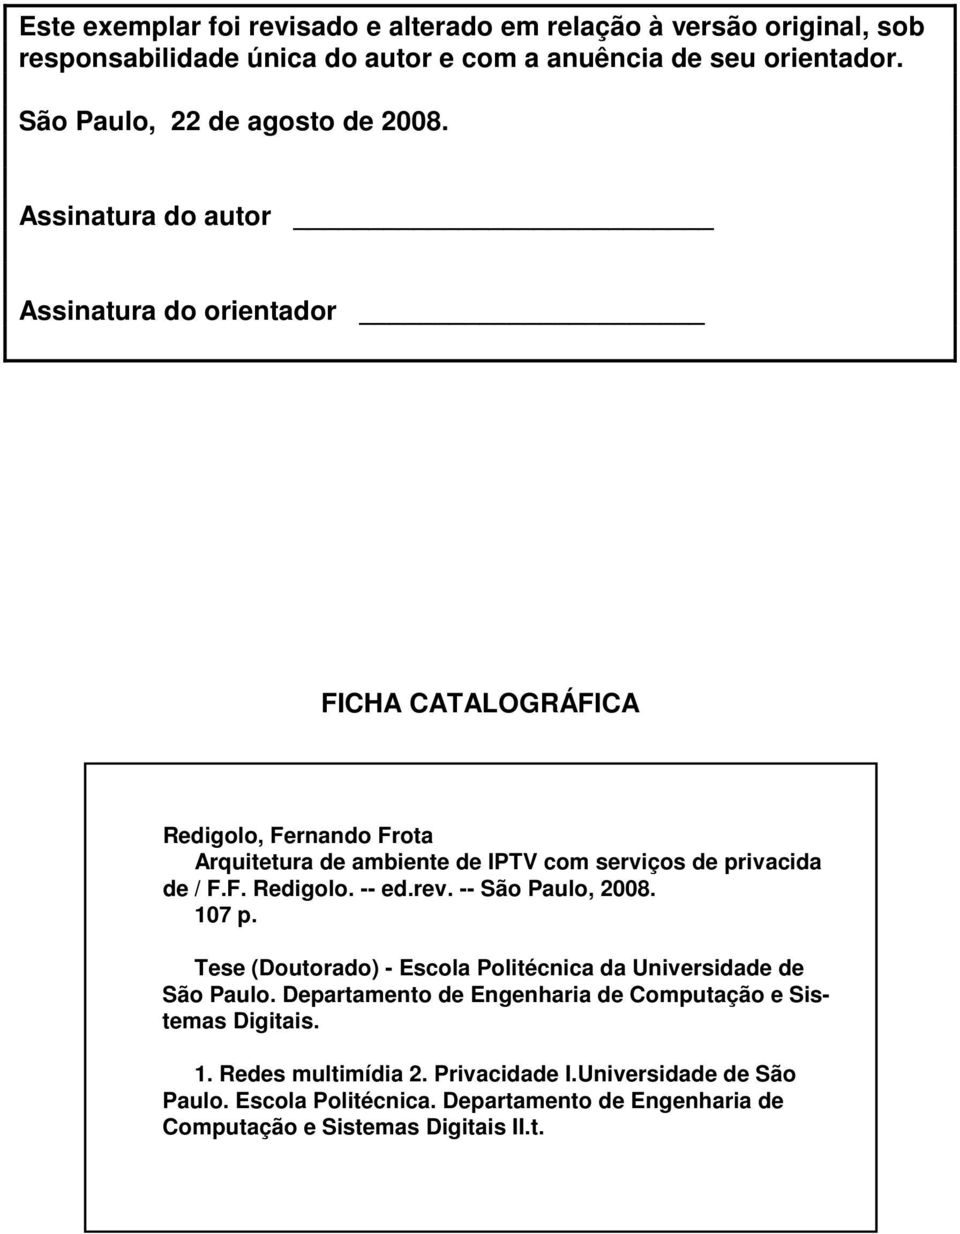 Assinatura do autor Assinatura do orientador FICHA CATALOGRÁFICA Redigolo, Fernando Frota Arquitetura de ambiente de IPTV com serviços de privacida de / F.F. Redigolo. -- ed.